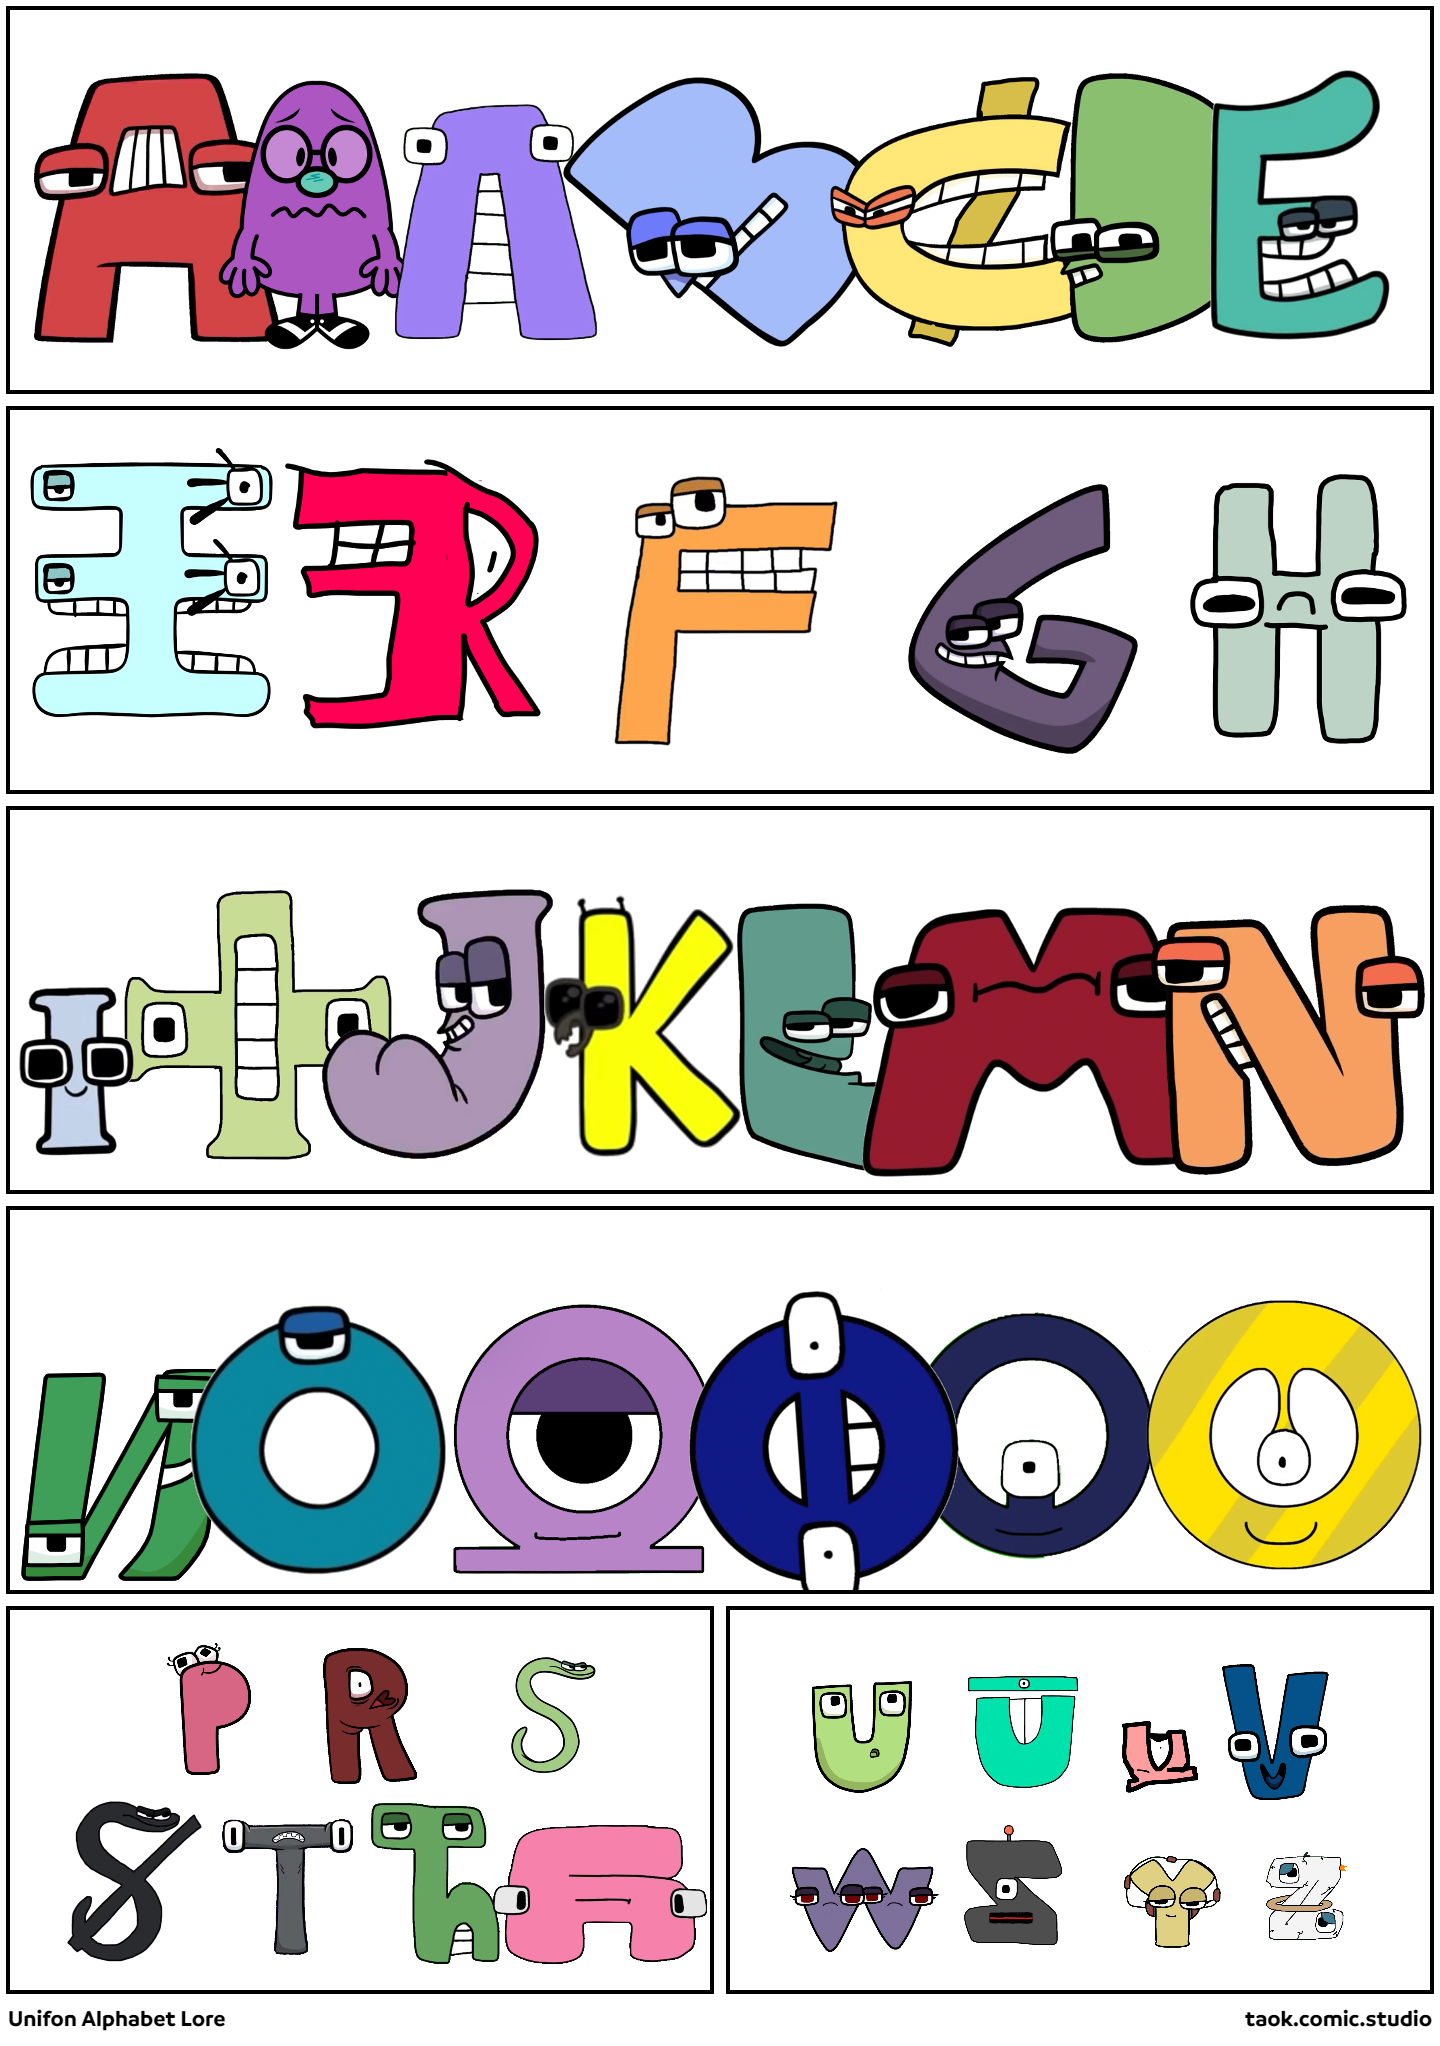 Alphabet Lore but with Unifon Letters - Comic Studio